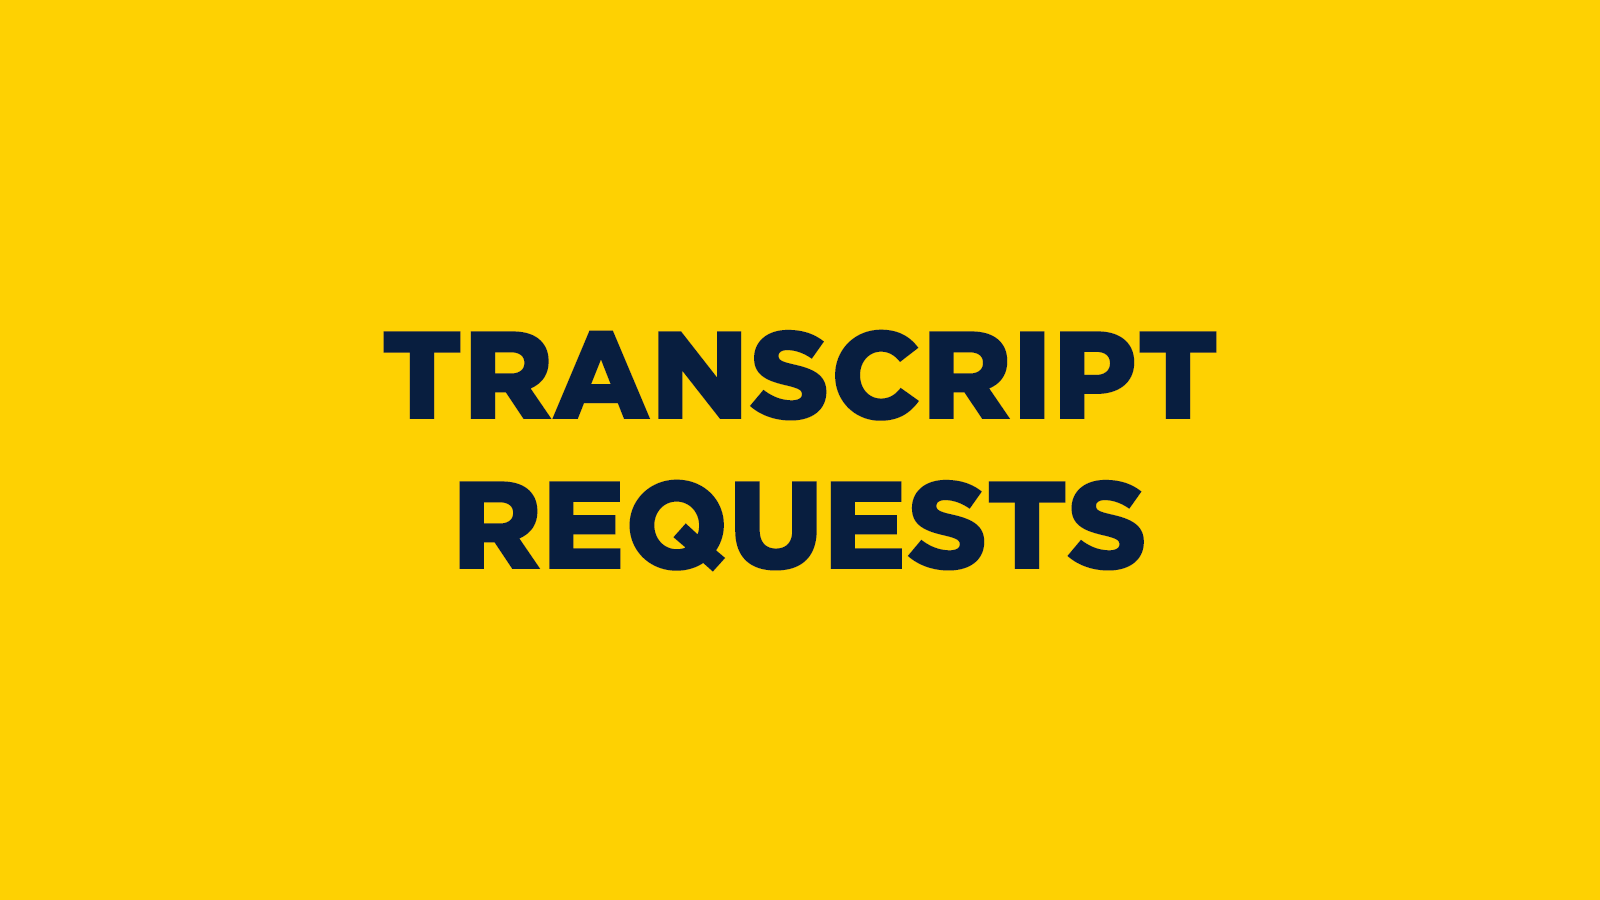 Transcript Requests